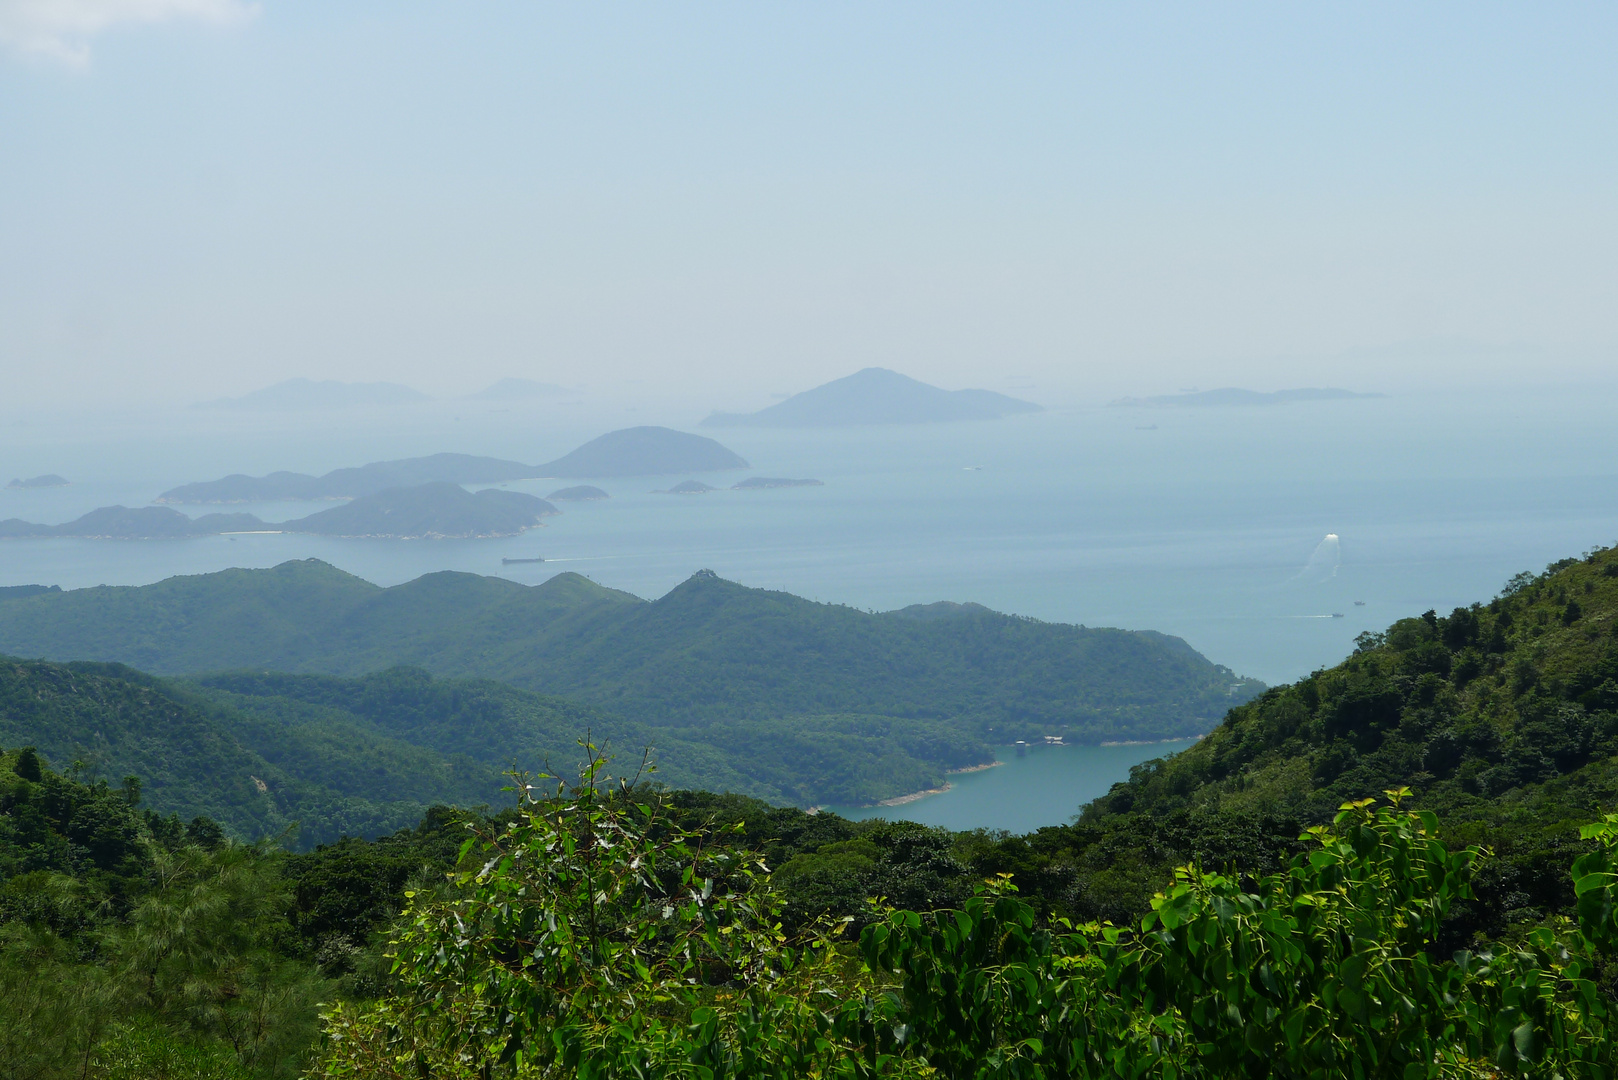 Lantau Island Trail